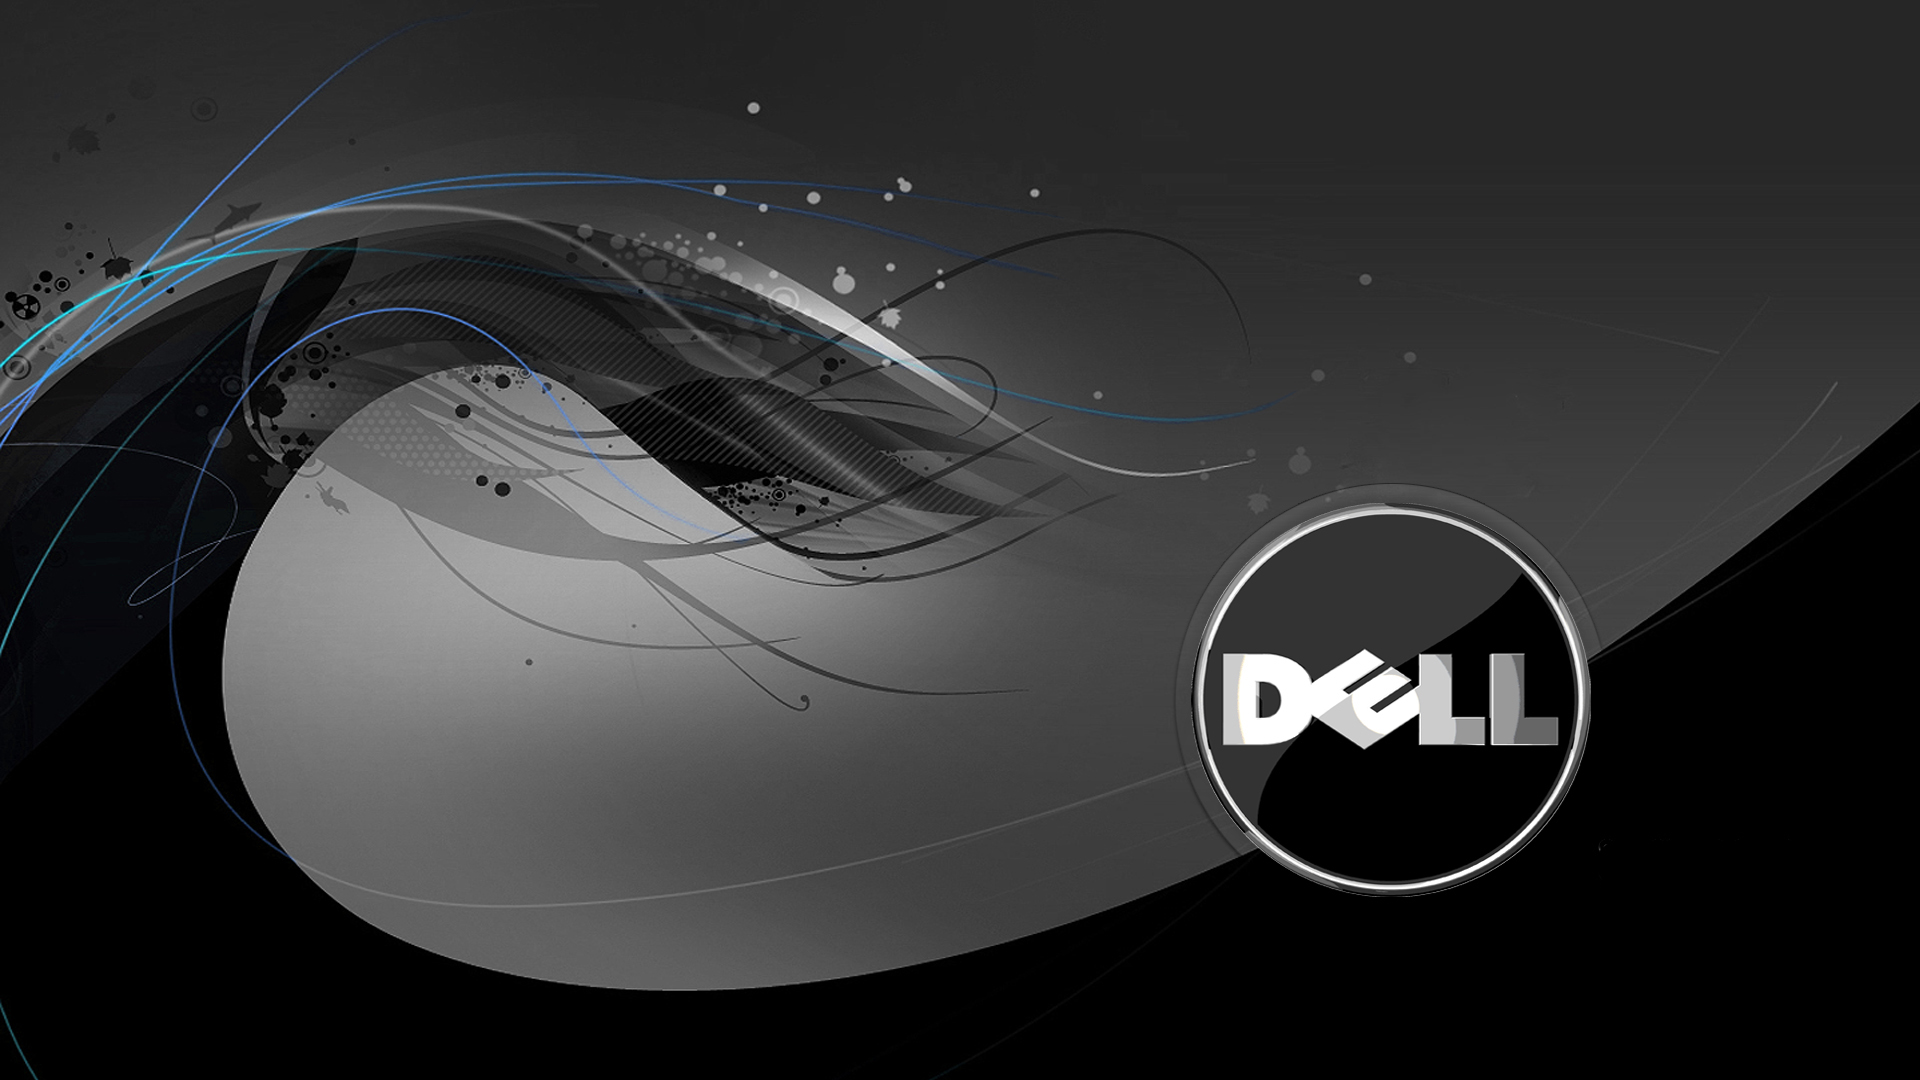 Thuộc về Dell, hỗ trợ và hợp đồng bảo trì đã được thiết kế để giúp đảm bảo rằng khách hàng luôn nhận được tổng thể tốt nhất từ sản phẩm của mình. Chúng tôi cung cấp dịch vụ chuyên nghiệp và tận tình với đội ngũ chuyên gia của chúng tôi. Đến với chúng tôi, bạn sẽ an tâm hơn khi sử dụng sản phẩm của máy tính.